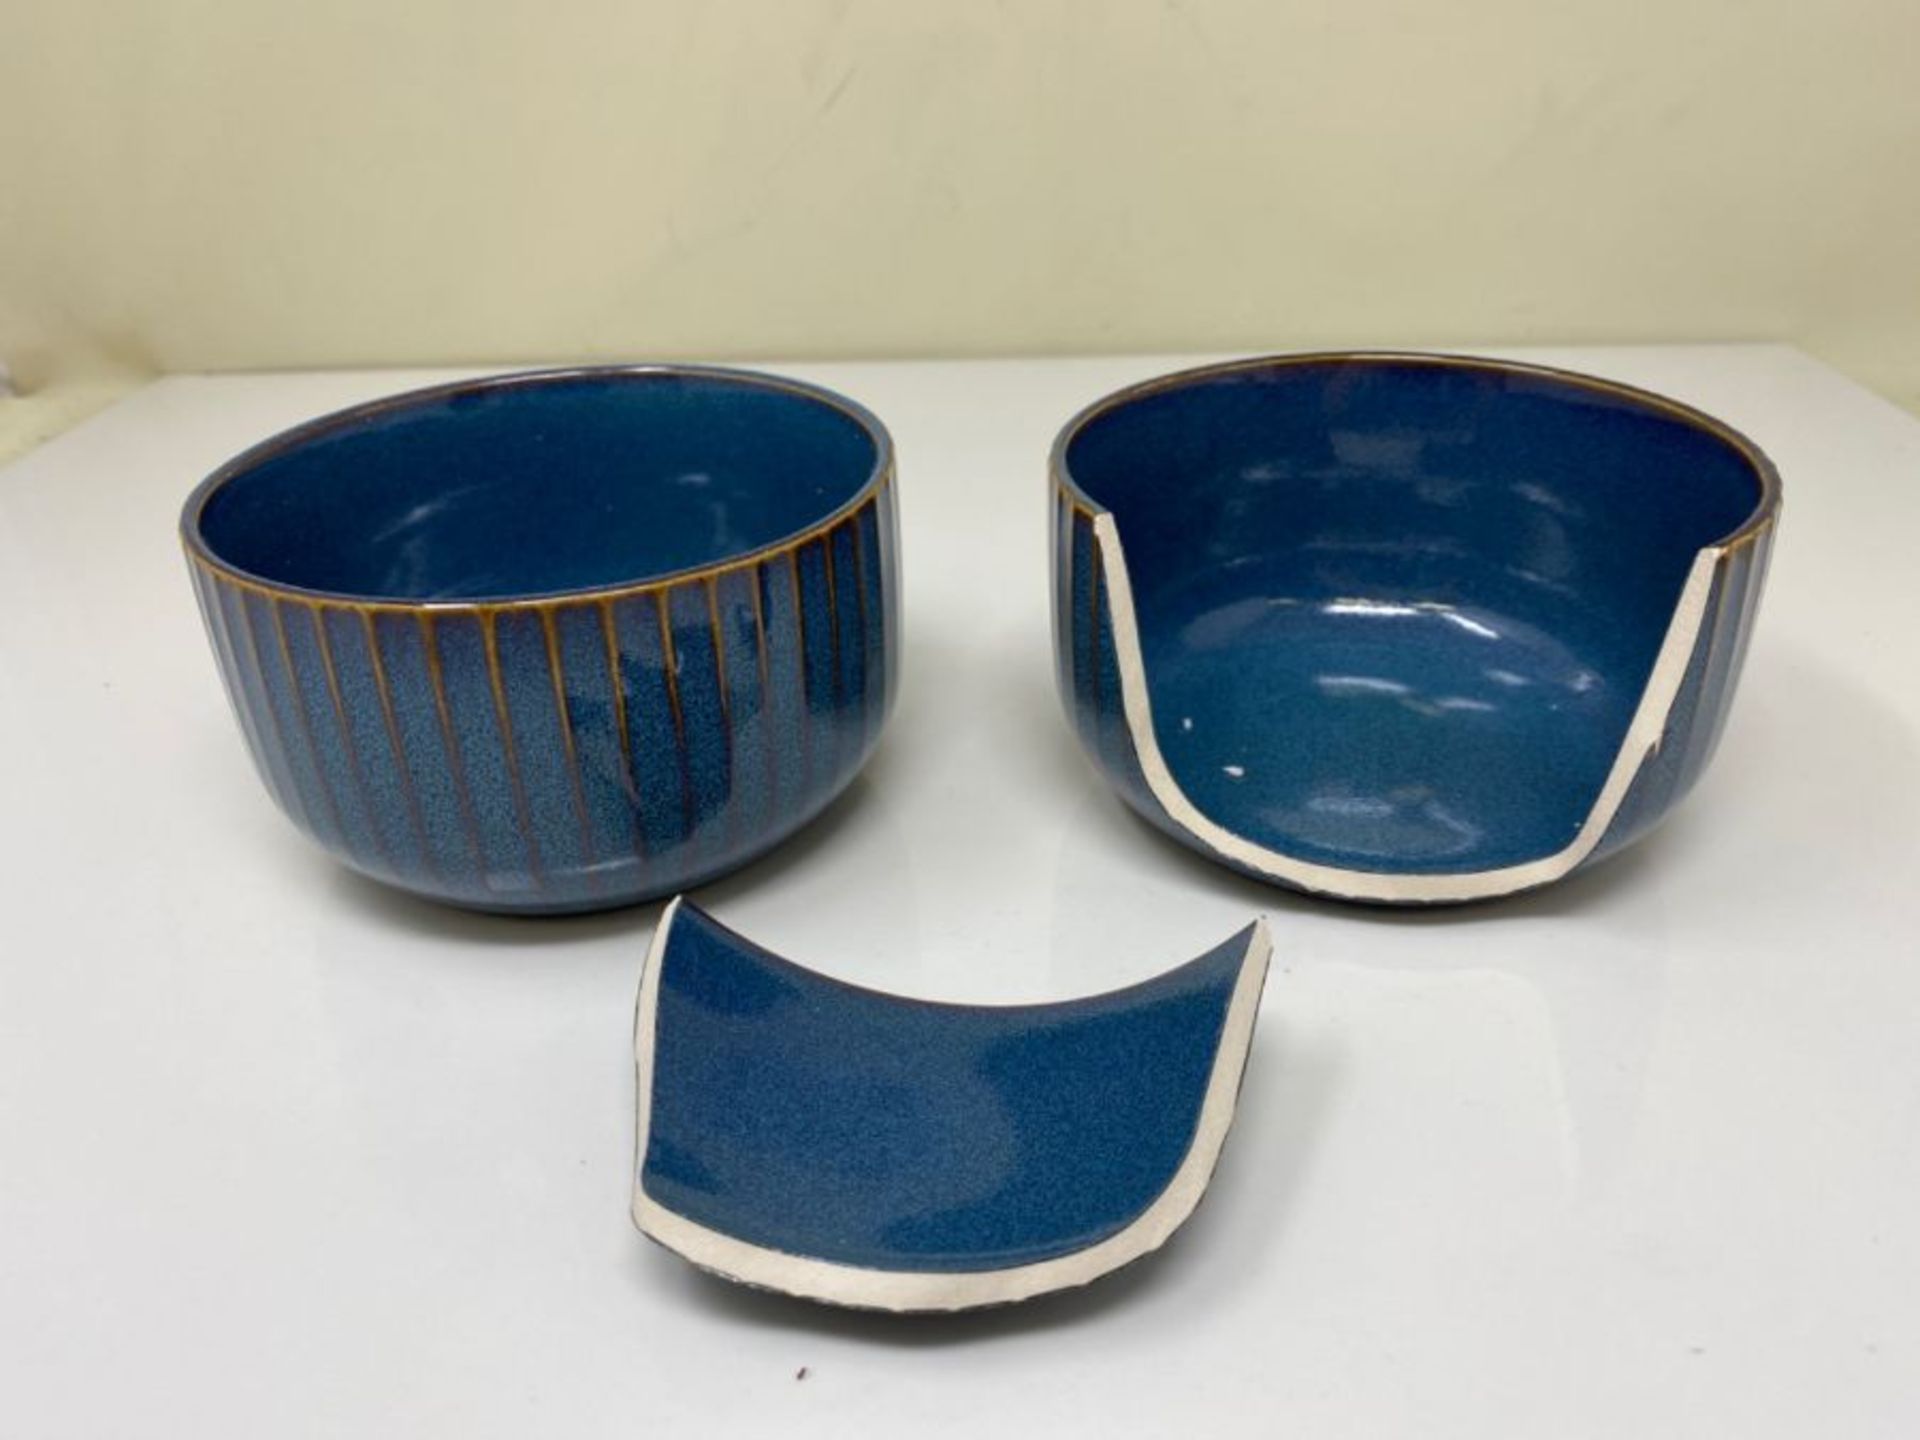 Porcelain Bowls, 18oz Blue Cereal Bowls, Rice Bowls, Salad Bowls, Dishwasher, Microwav - Image 2 of 2